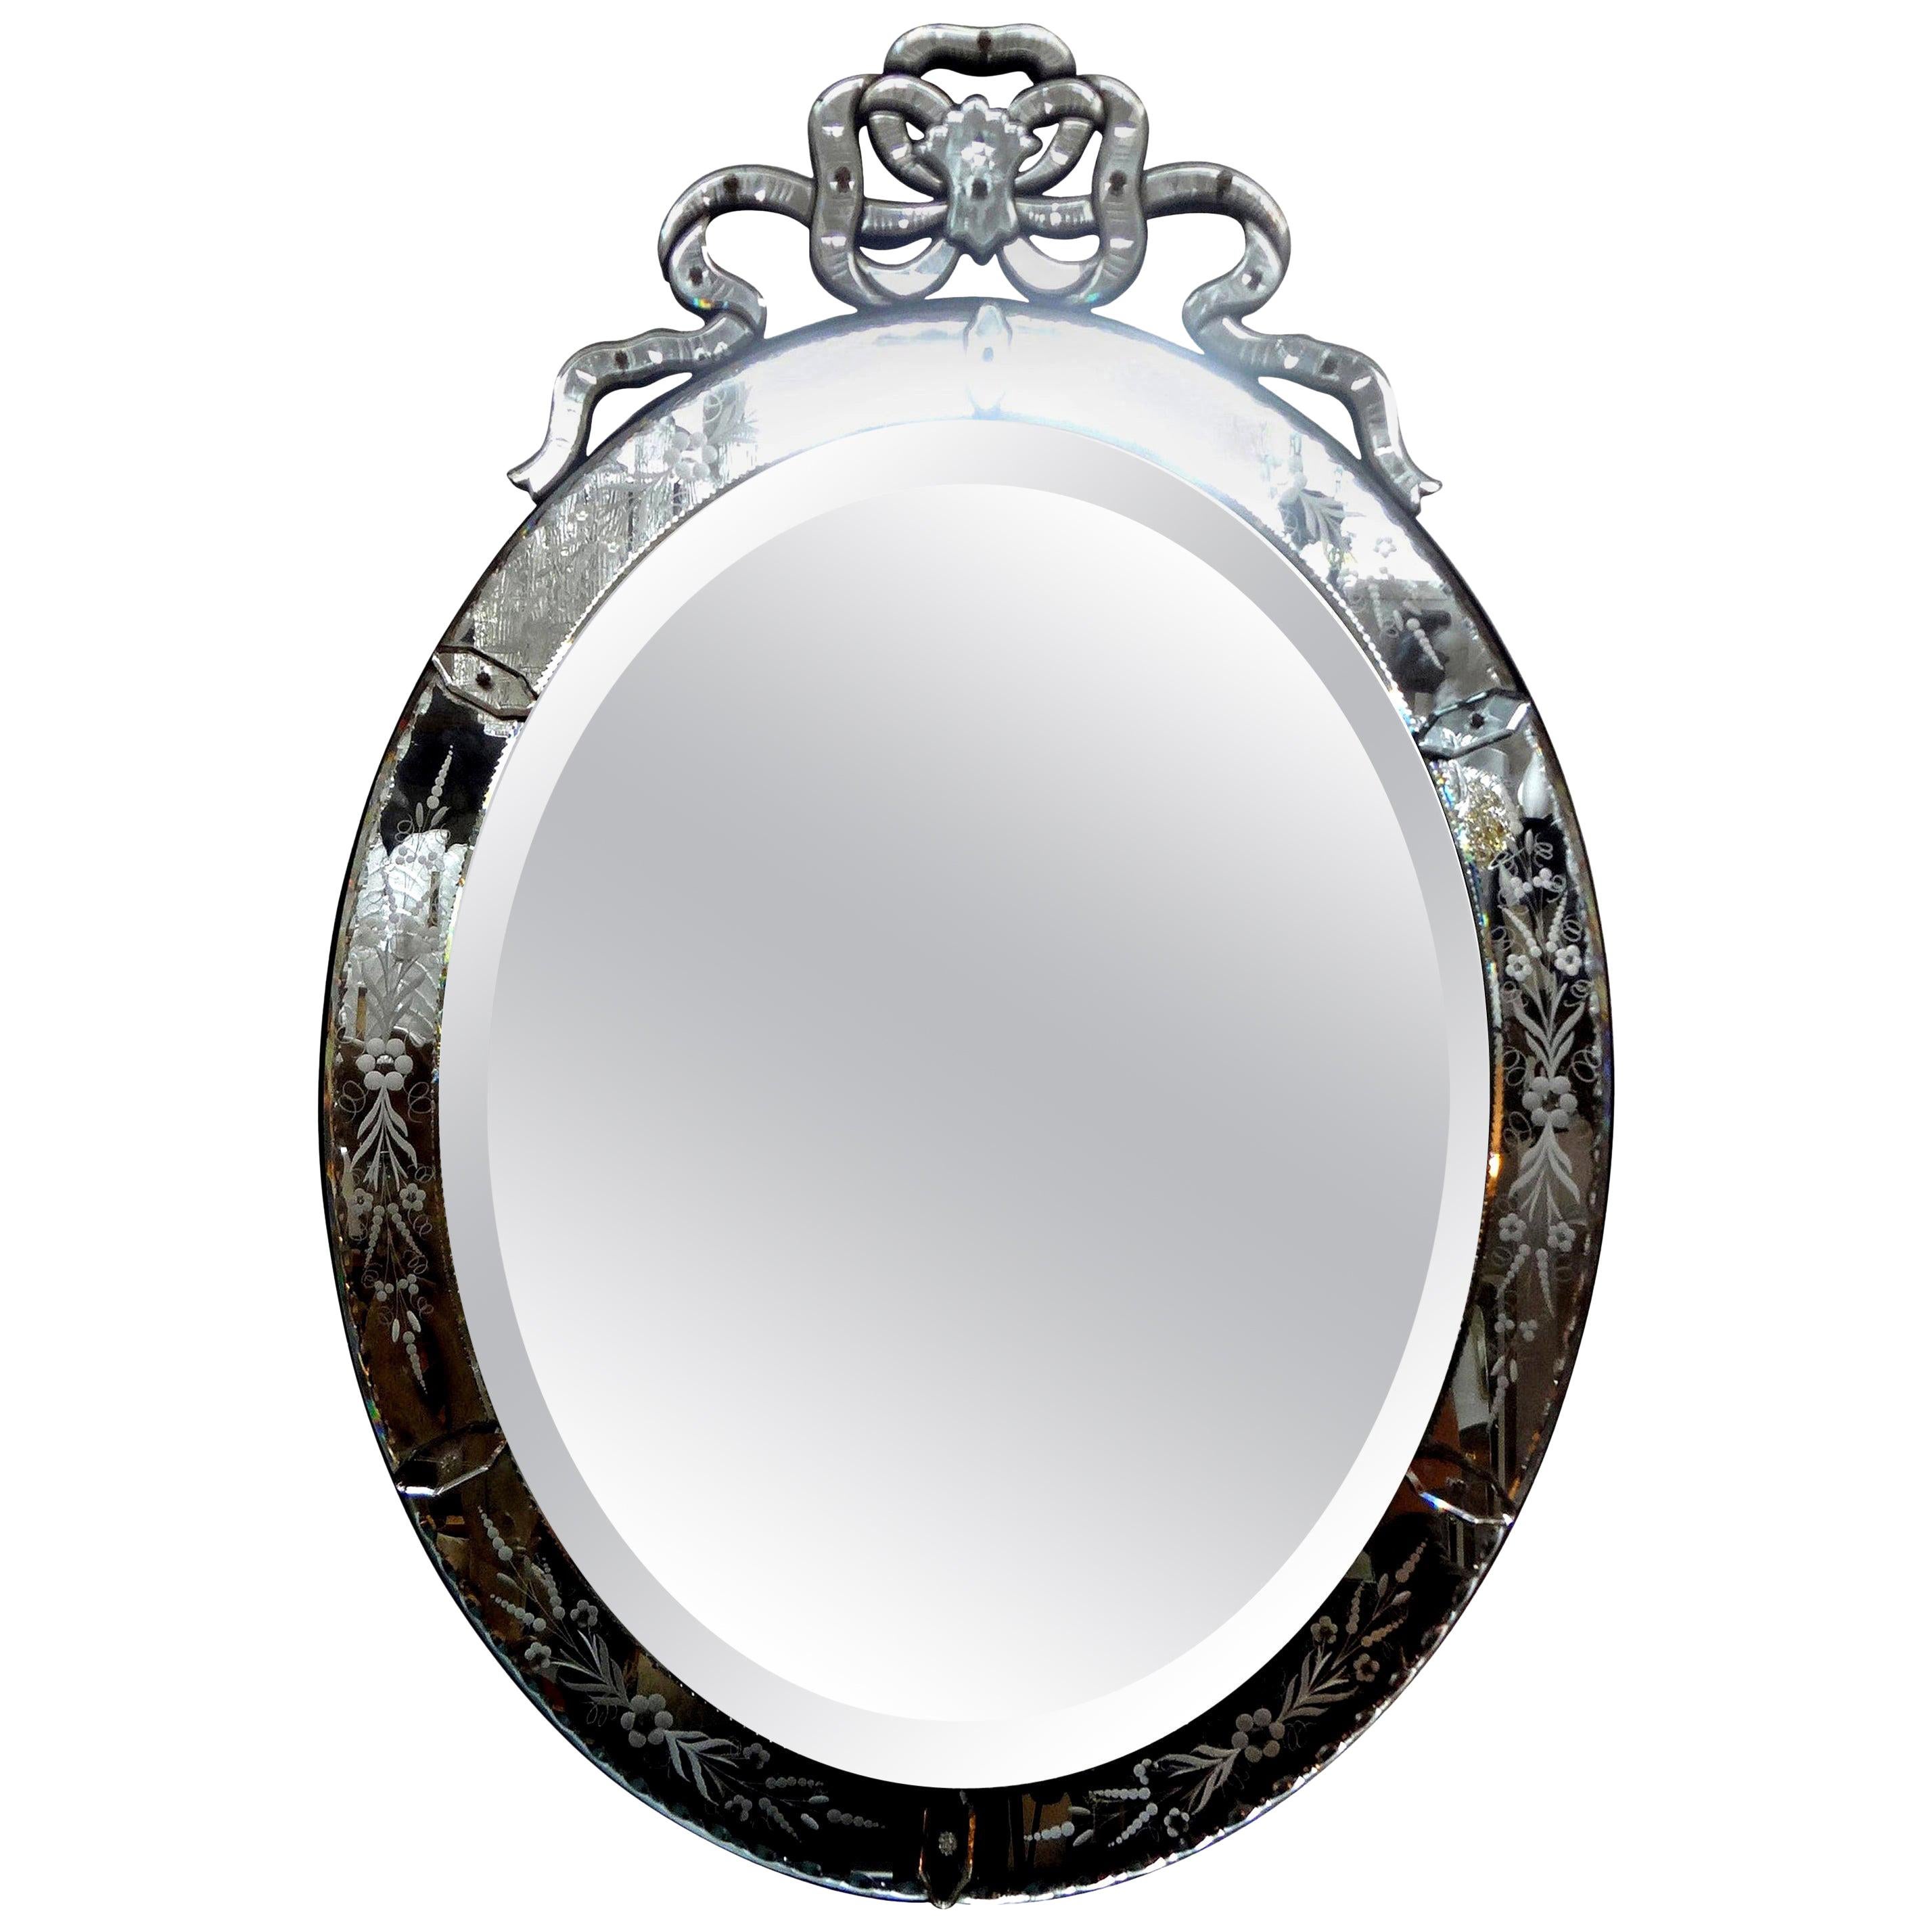 Grand miroir vénitien antique ovale gravé.
Superbe et grand miroir vénitien biseauté, ovale et gravé, de style néoclassique, avec un cartouche à arc carré. Ce joli miroir vénitien ovale est en très bel état ancien, sans fissure ni pièce manquante.